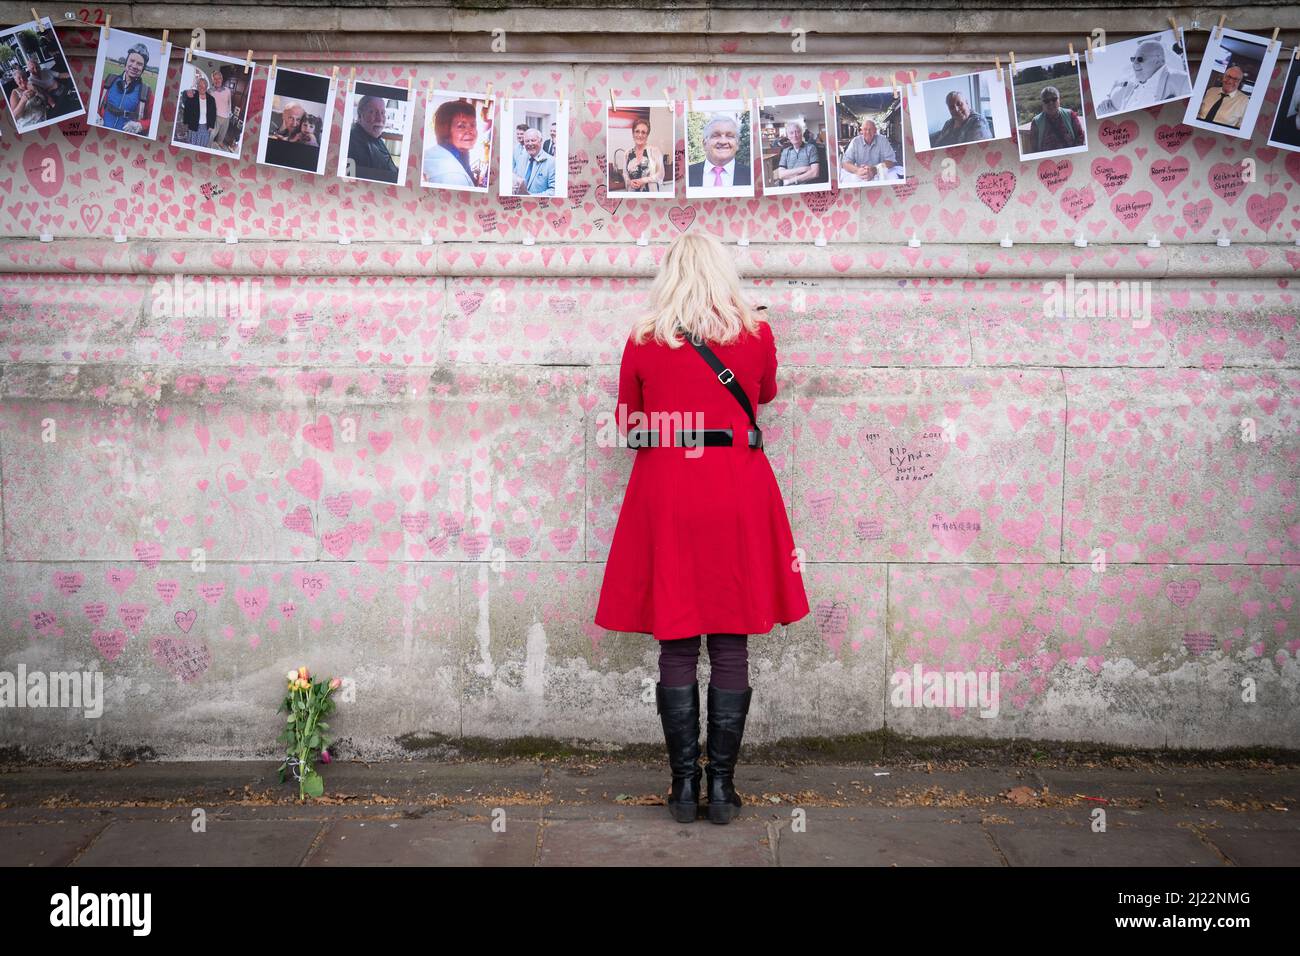 Ein Familienmitglied zahlt seinen Respekt für diejenigen, die Covid 19 ihr Leben verloren haben, während sie den einjährigen Jahrestag der National Covid Memorial Wall, London, begehen. Bilddatum: Dienstag, 29. März 2022. Stockfoto